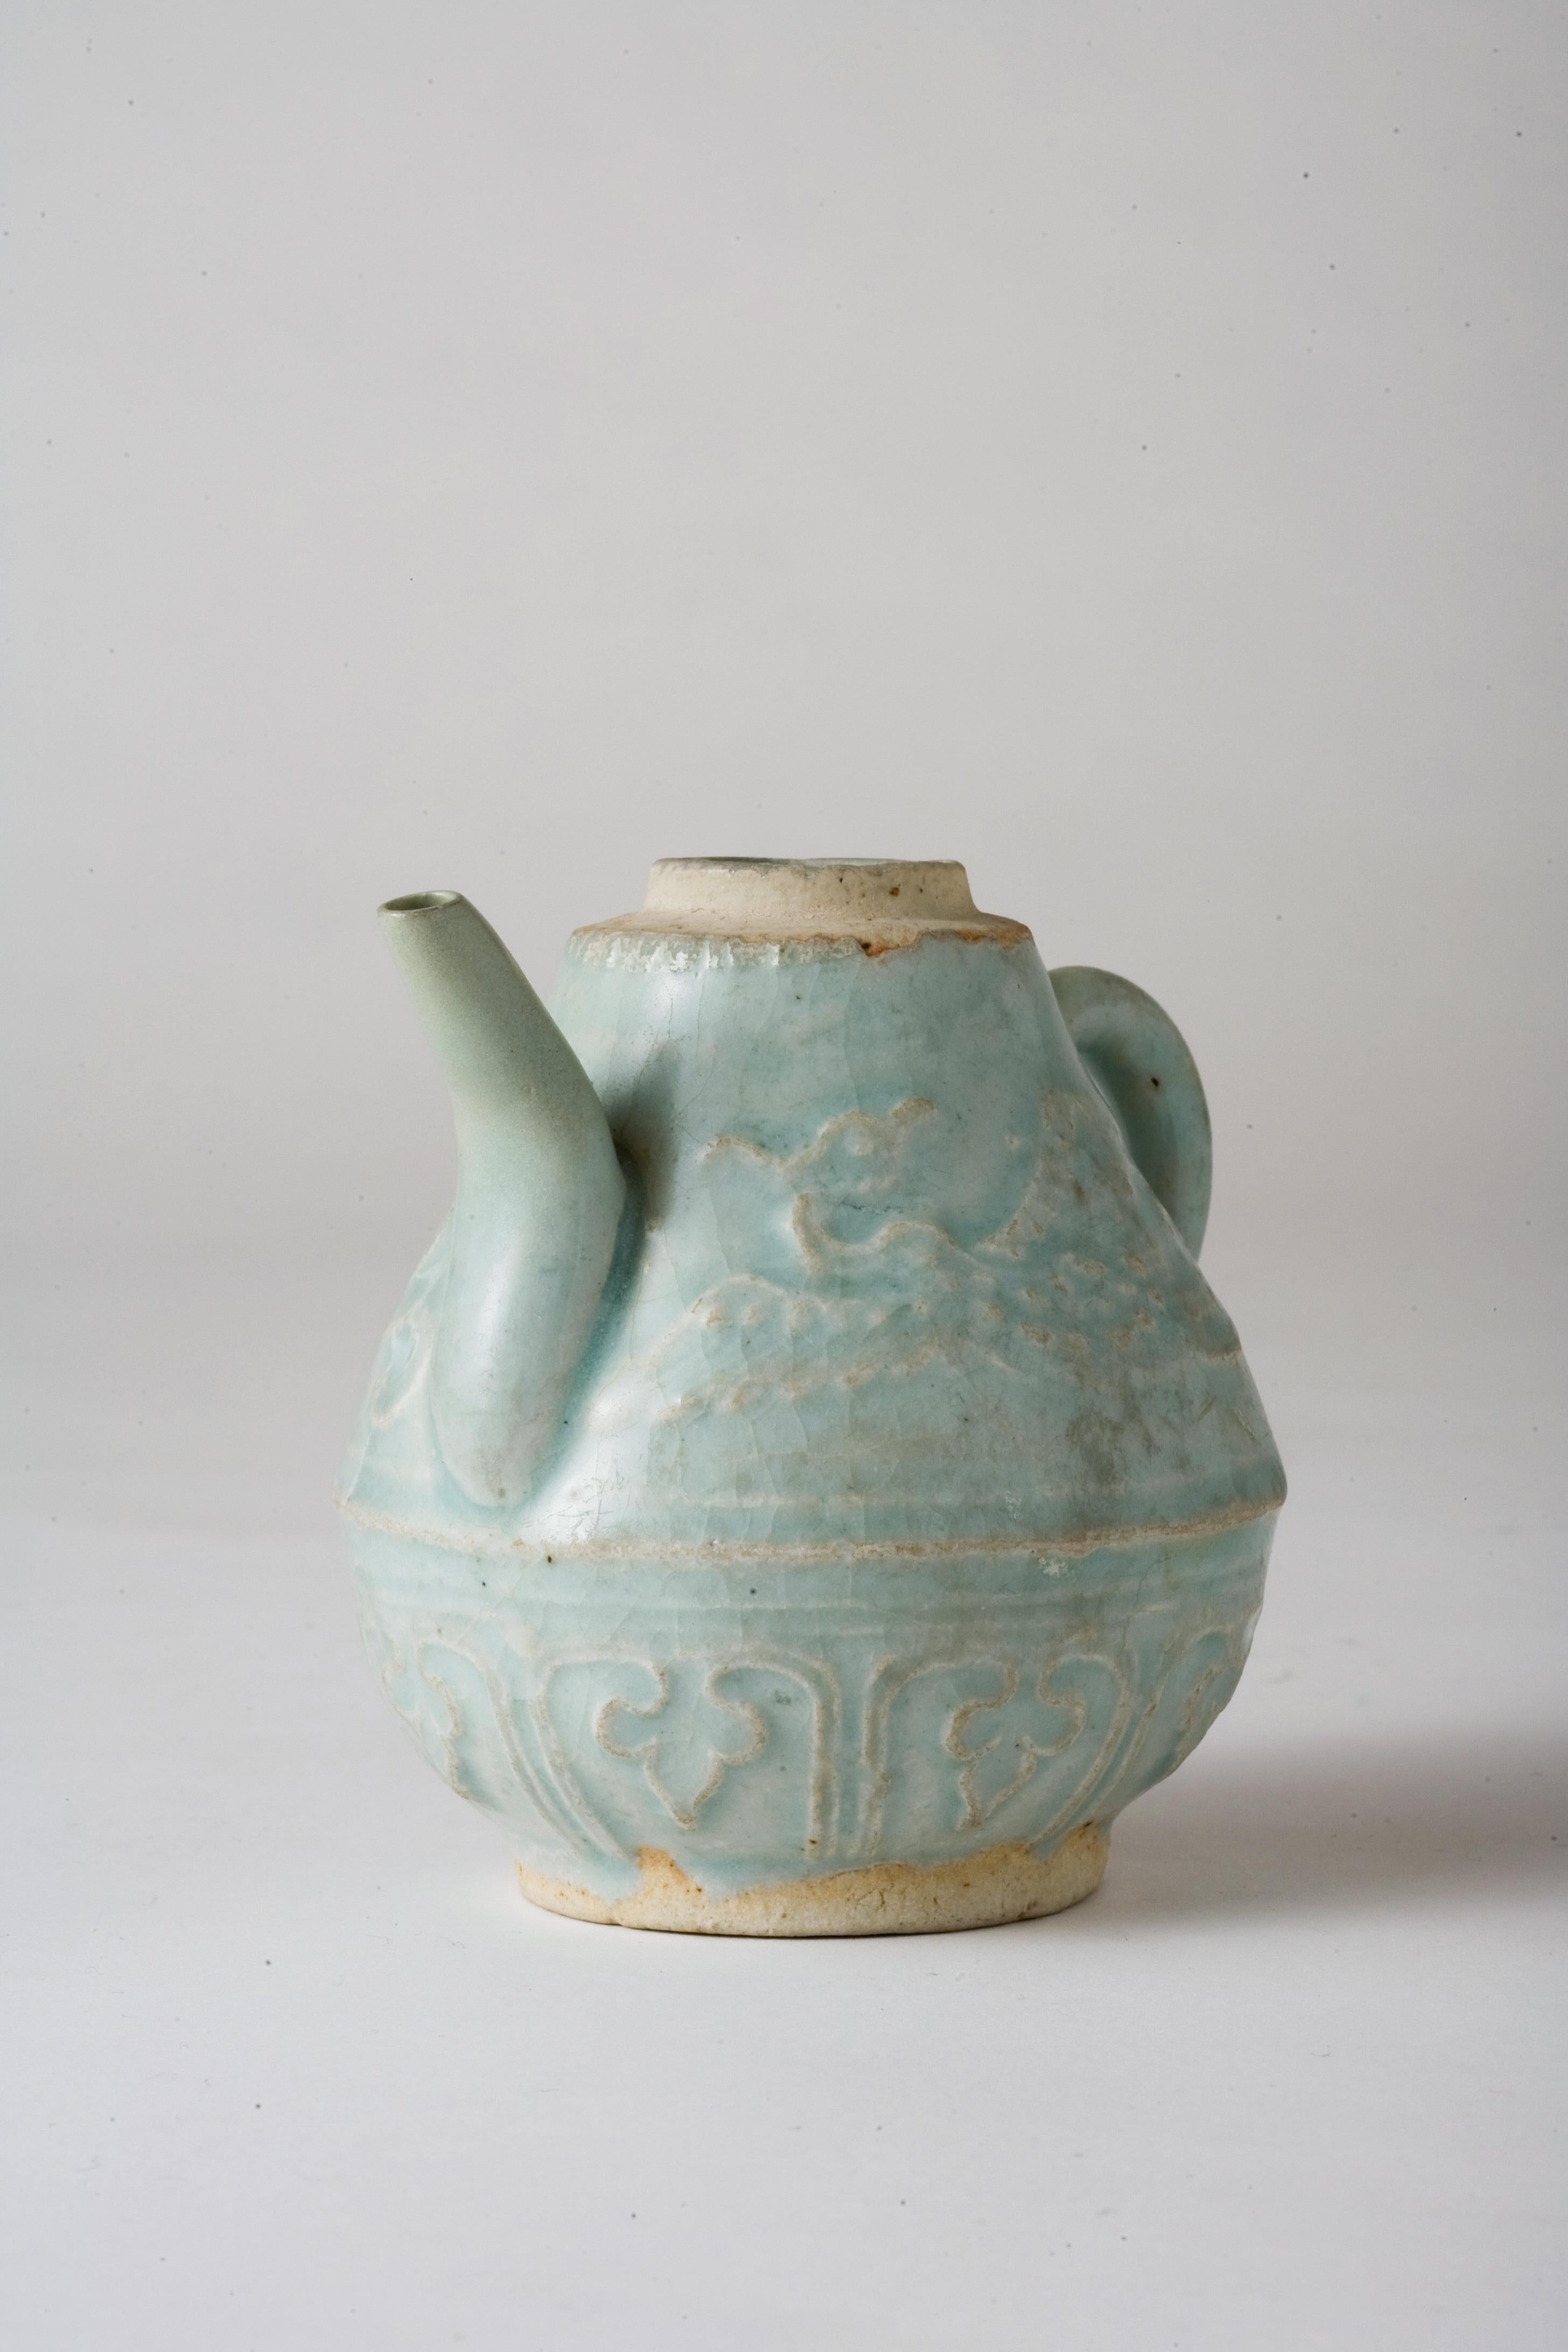 Cette petite aiguière est un exemple exquis de la céramique Qingbai, connue pour sa glaçure bleu pâle. Le récipient met en valeur les techniques avancées de la céramique et la sophistication artistique de l'époque. Sa forme délicate est rehaussée